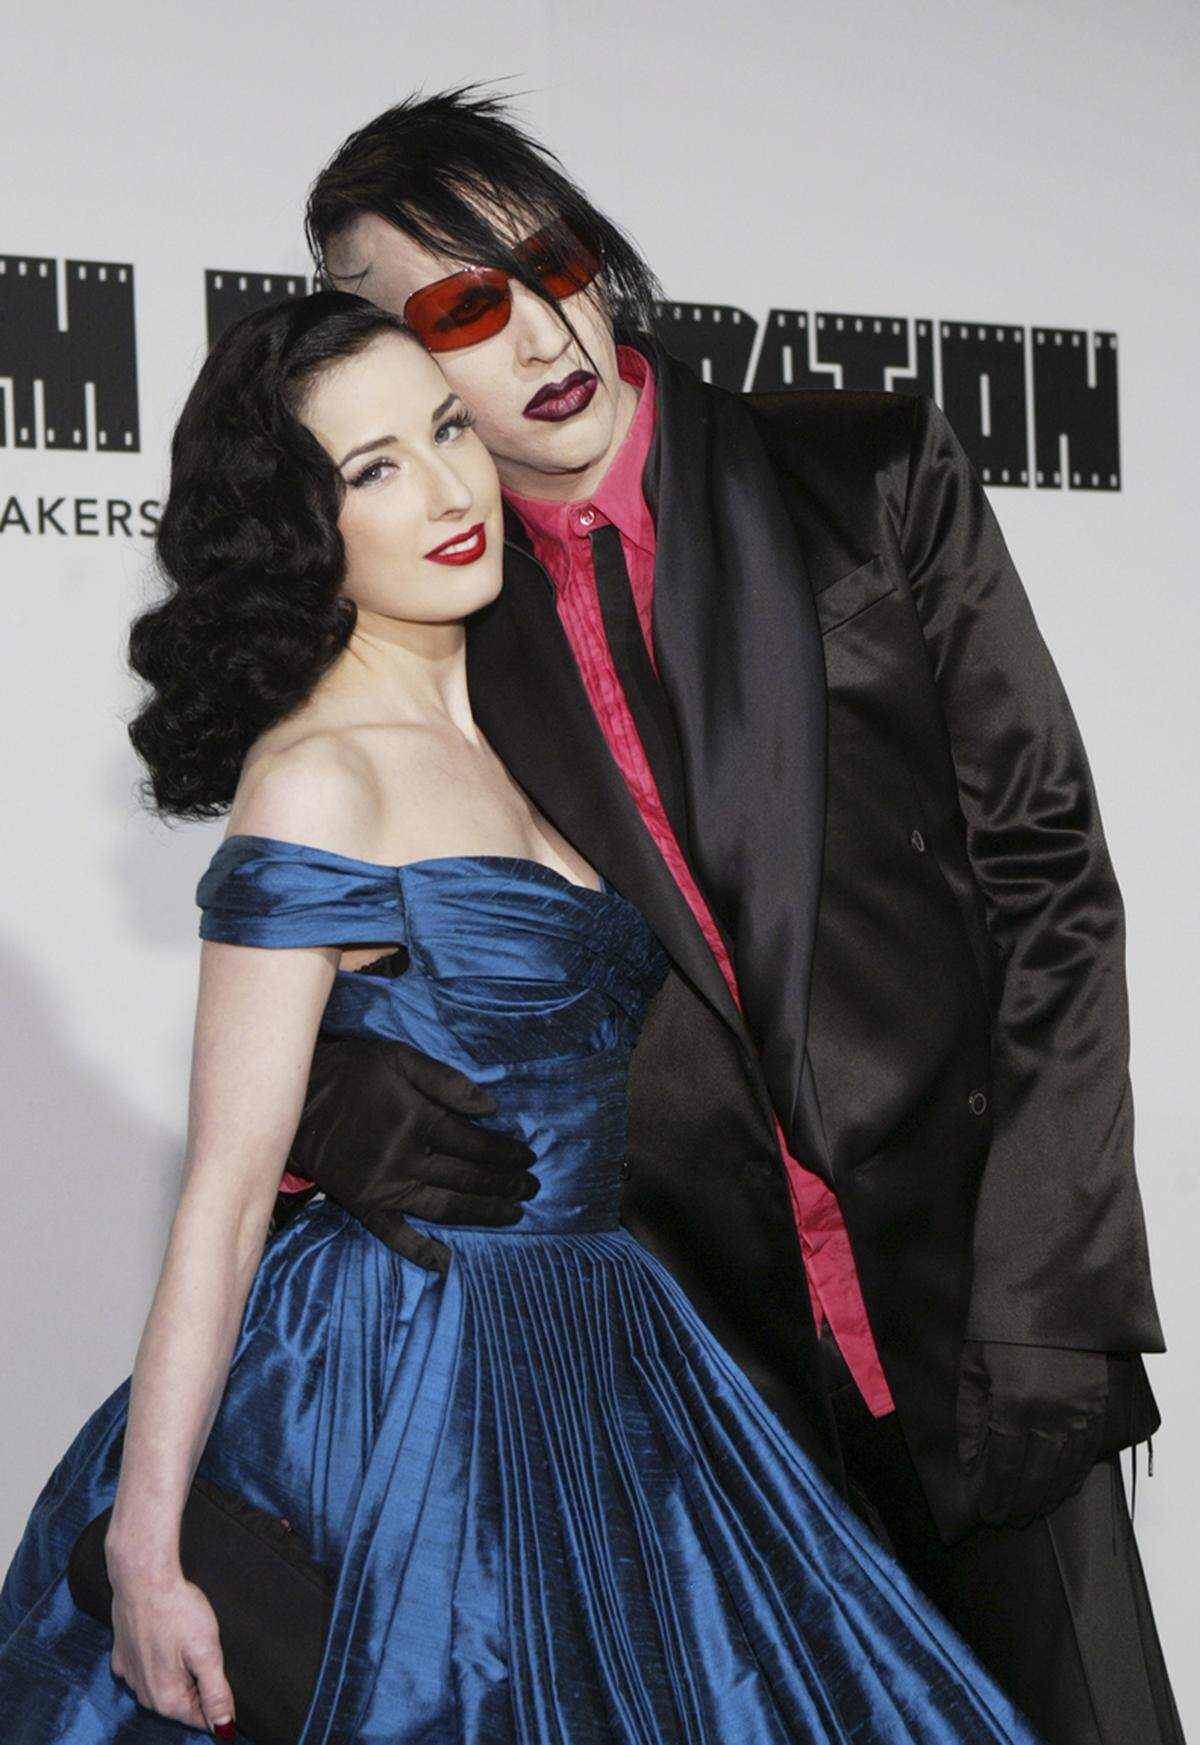 Die naturblonde Burlesque-Tänzerin Dita von Teese wurde an der Seite von Sänger Marilyn Manson bekannt. Damals wie heute gilt: Ihr pechschwarz gefärbtes Haar ...